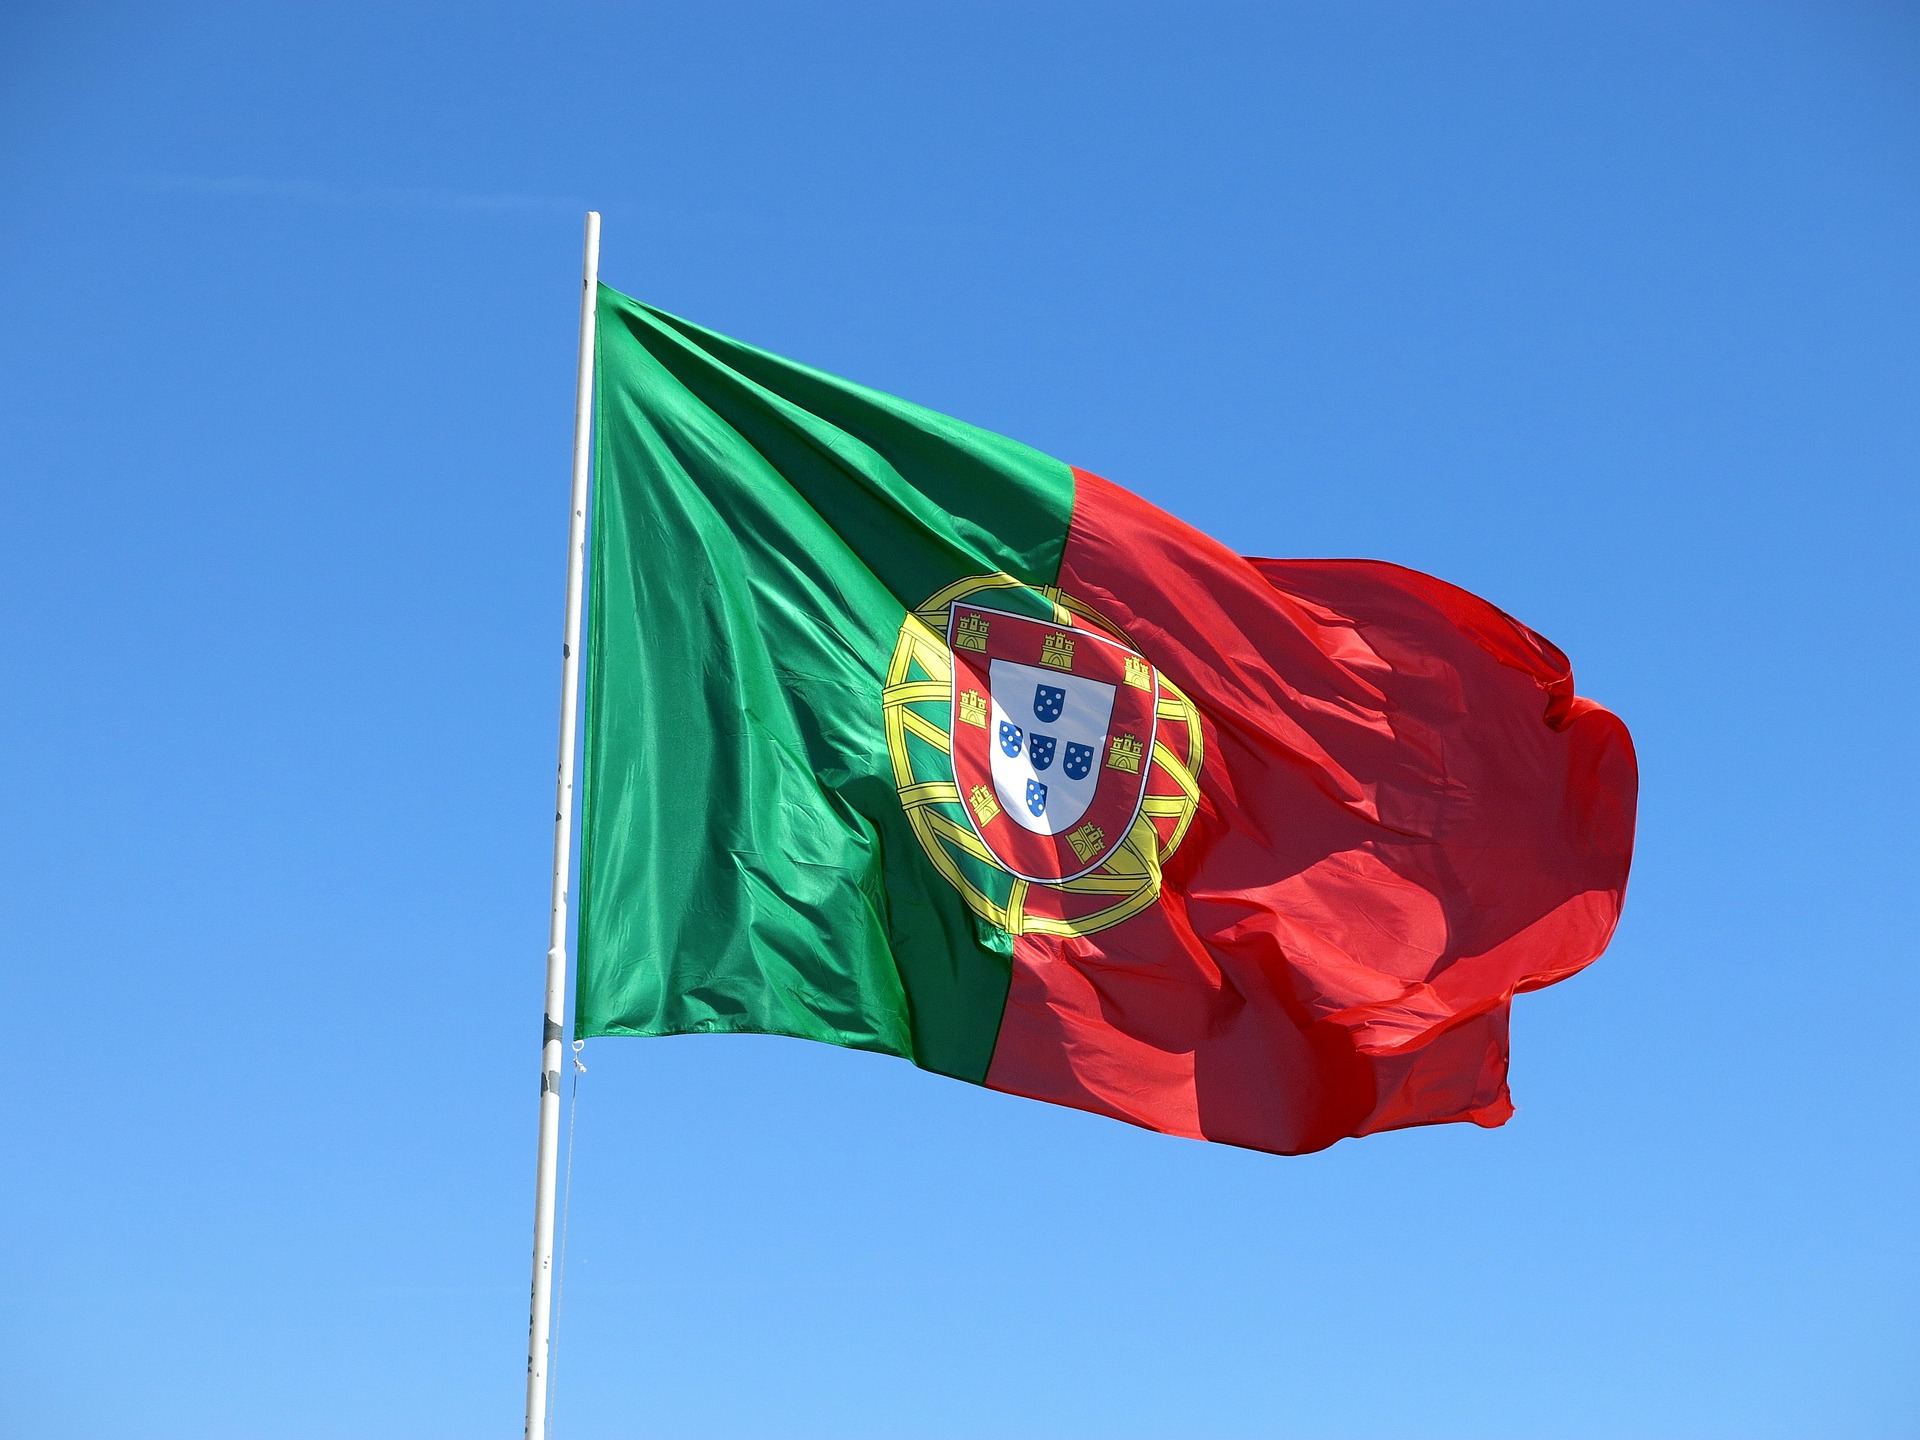 Posjet Portugalu